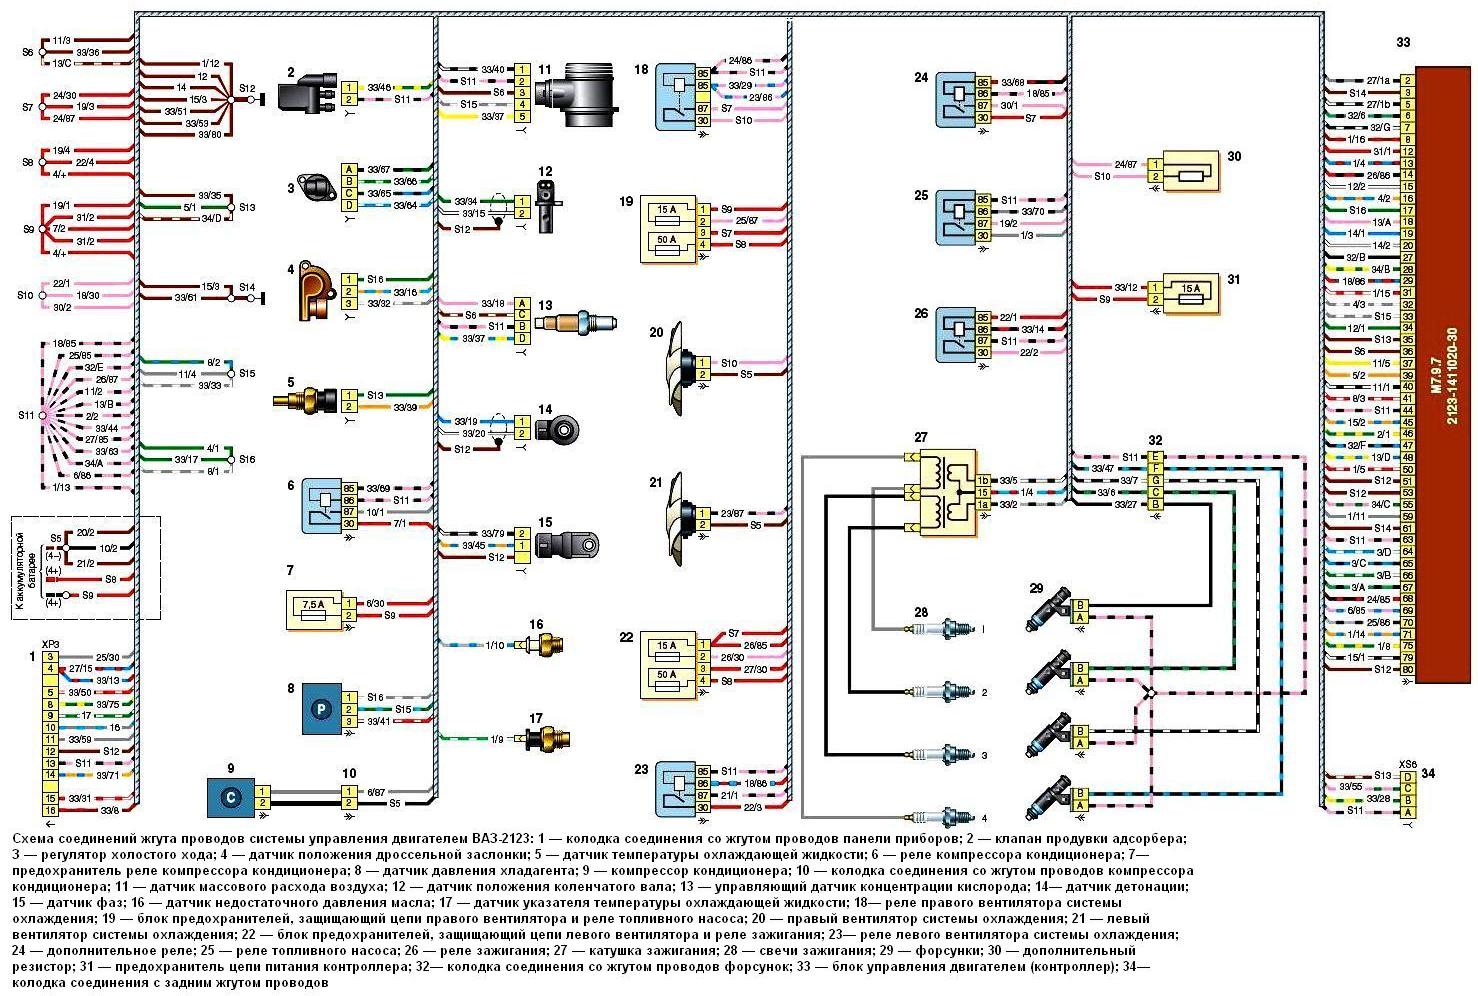 Схемы соединений жгутов проводов автомобиля ВАЗ-2123